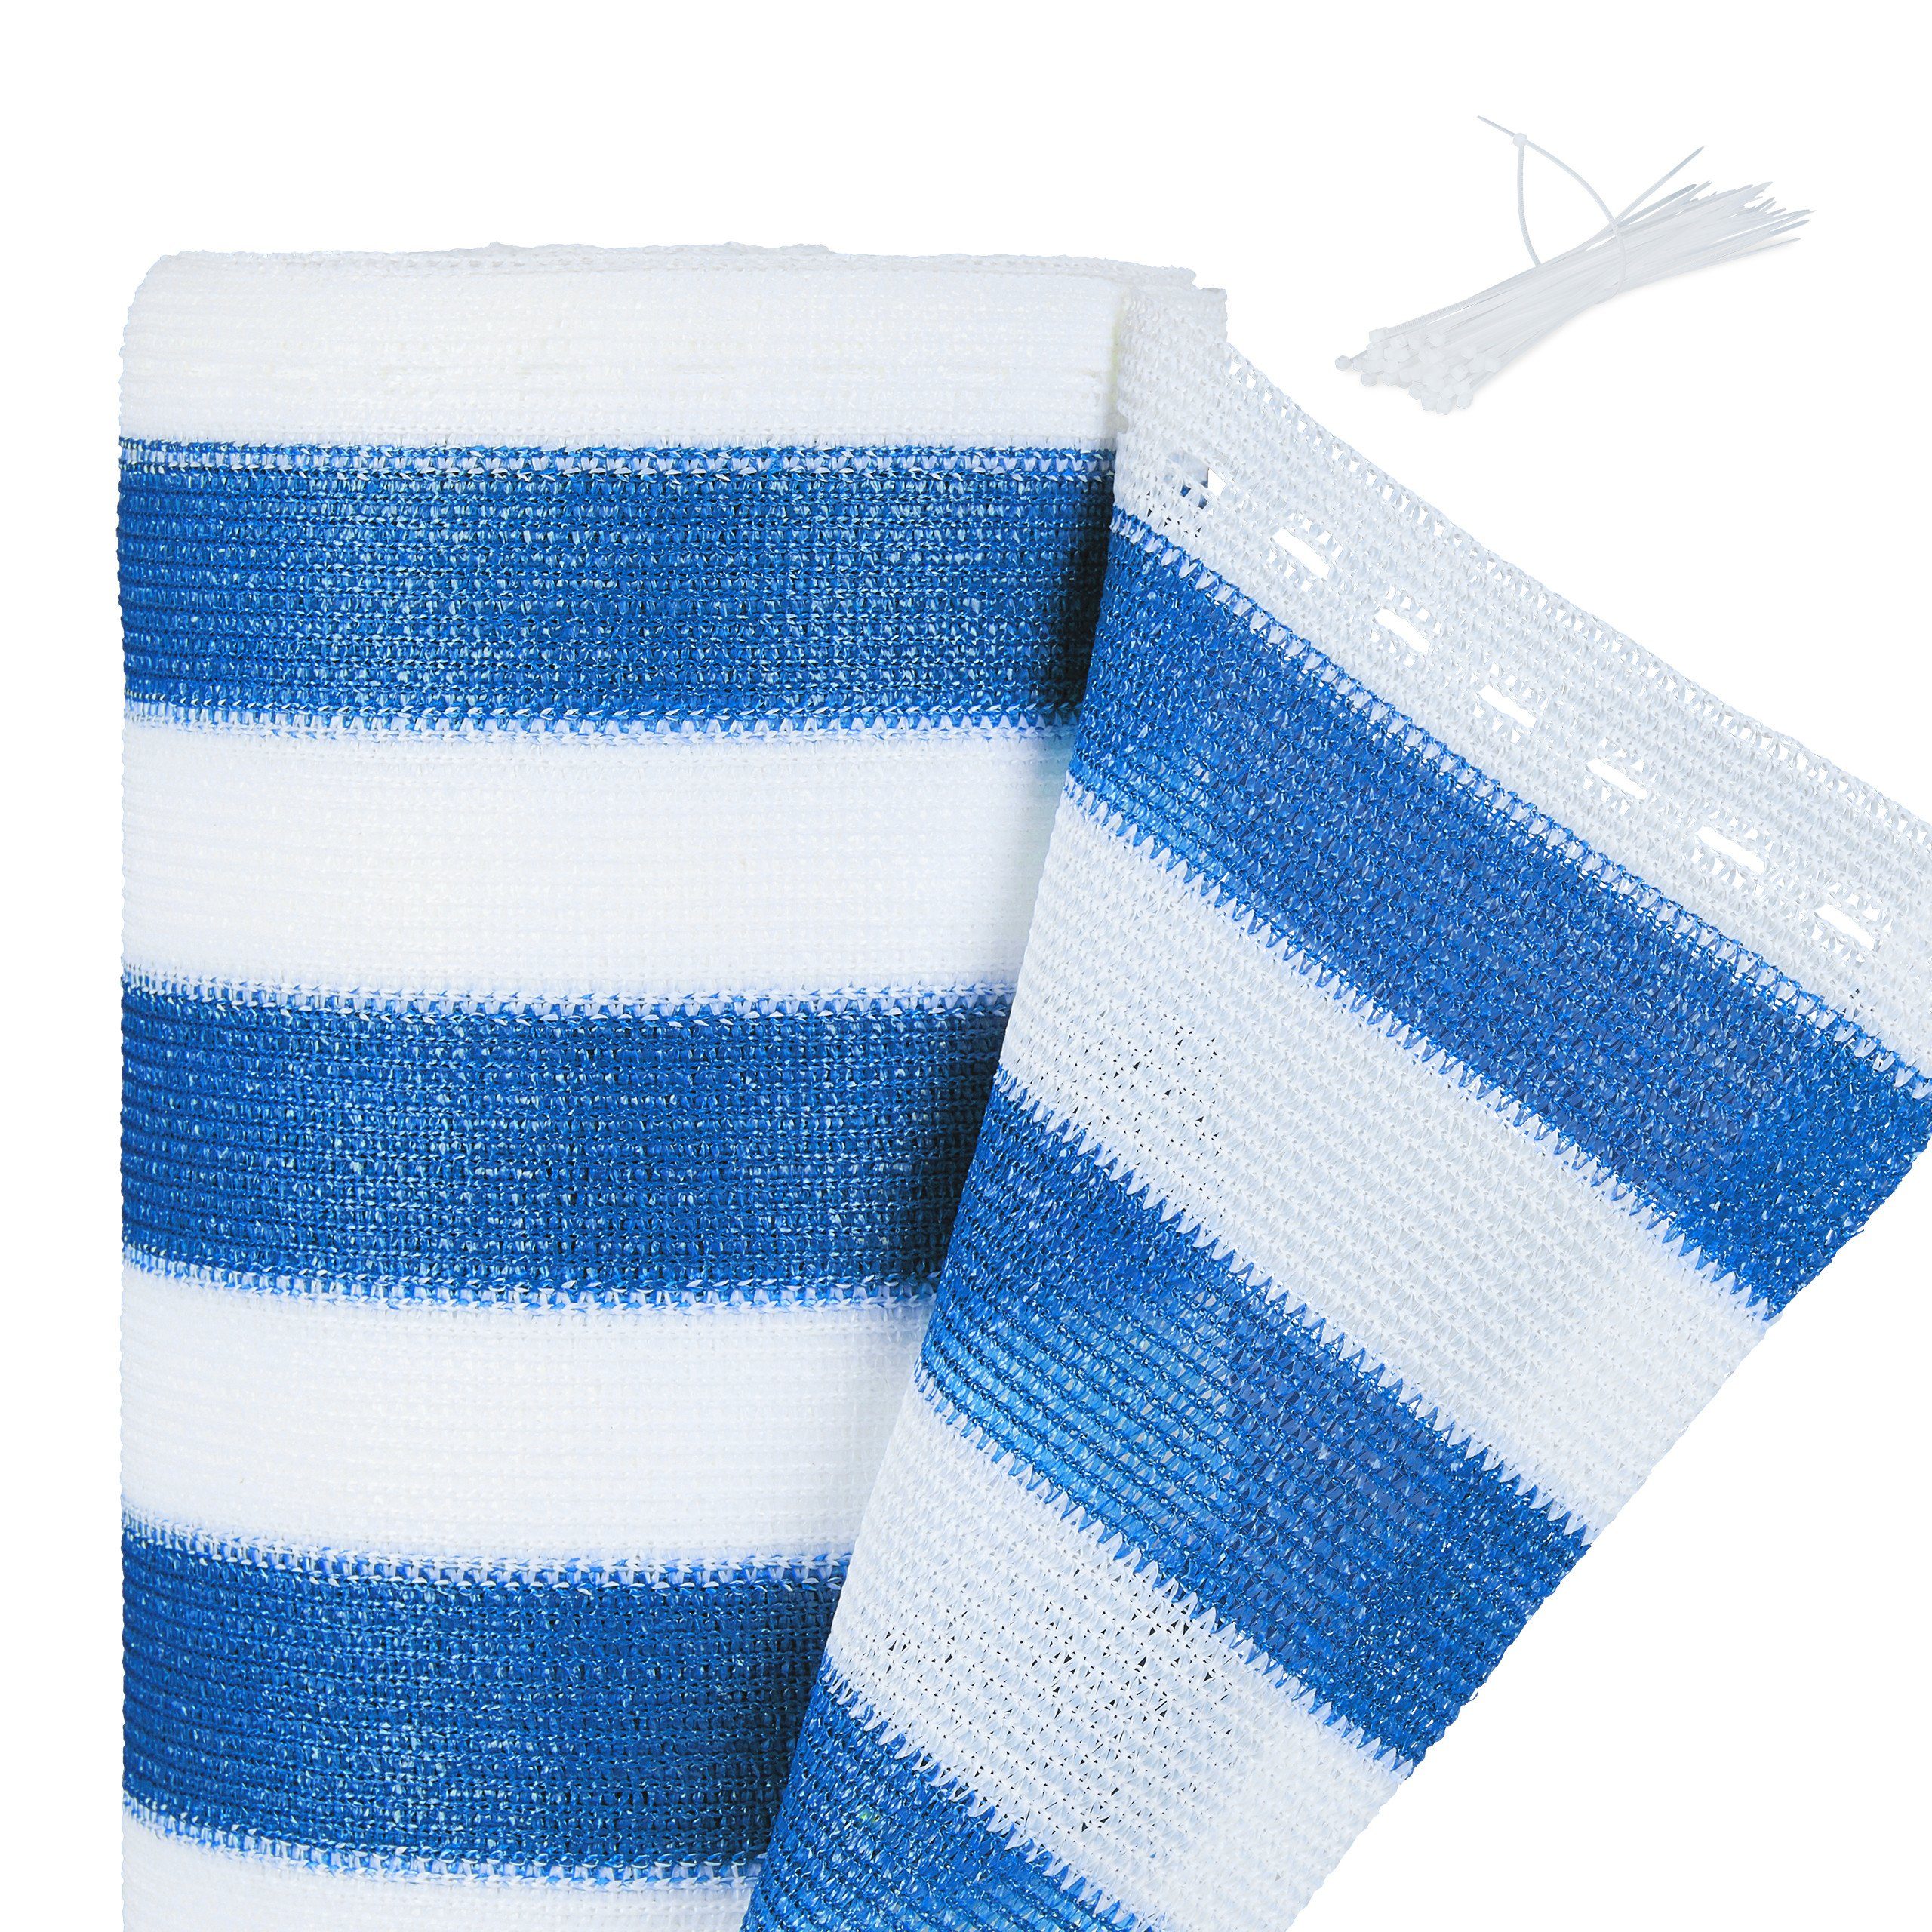 relaxdays Blende Zaunblende 1,2 m blau-weiß gestreift, 1,2 x 6 Meter | Abdeckblenden